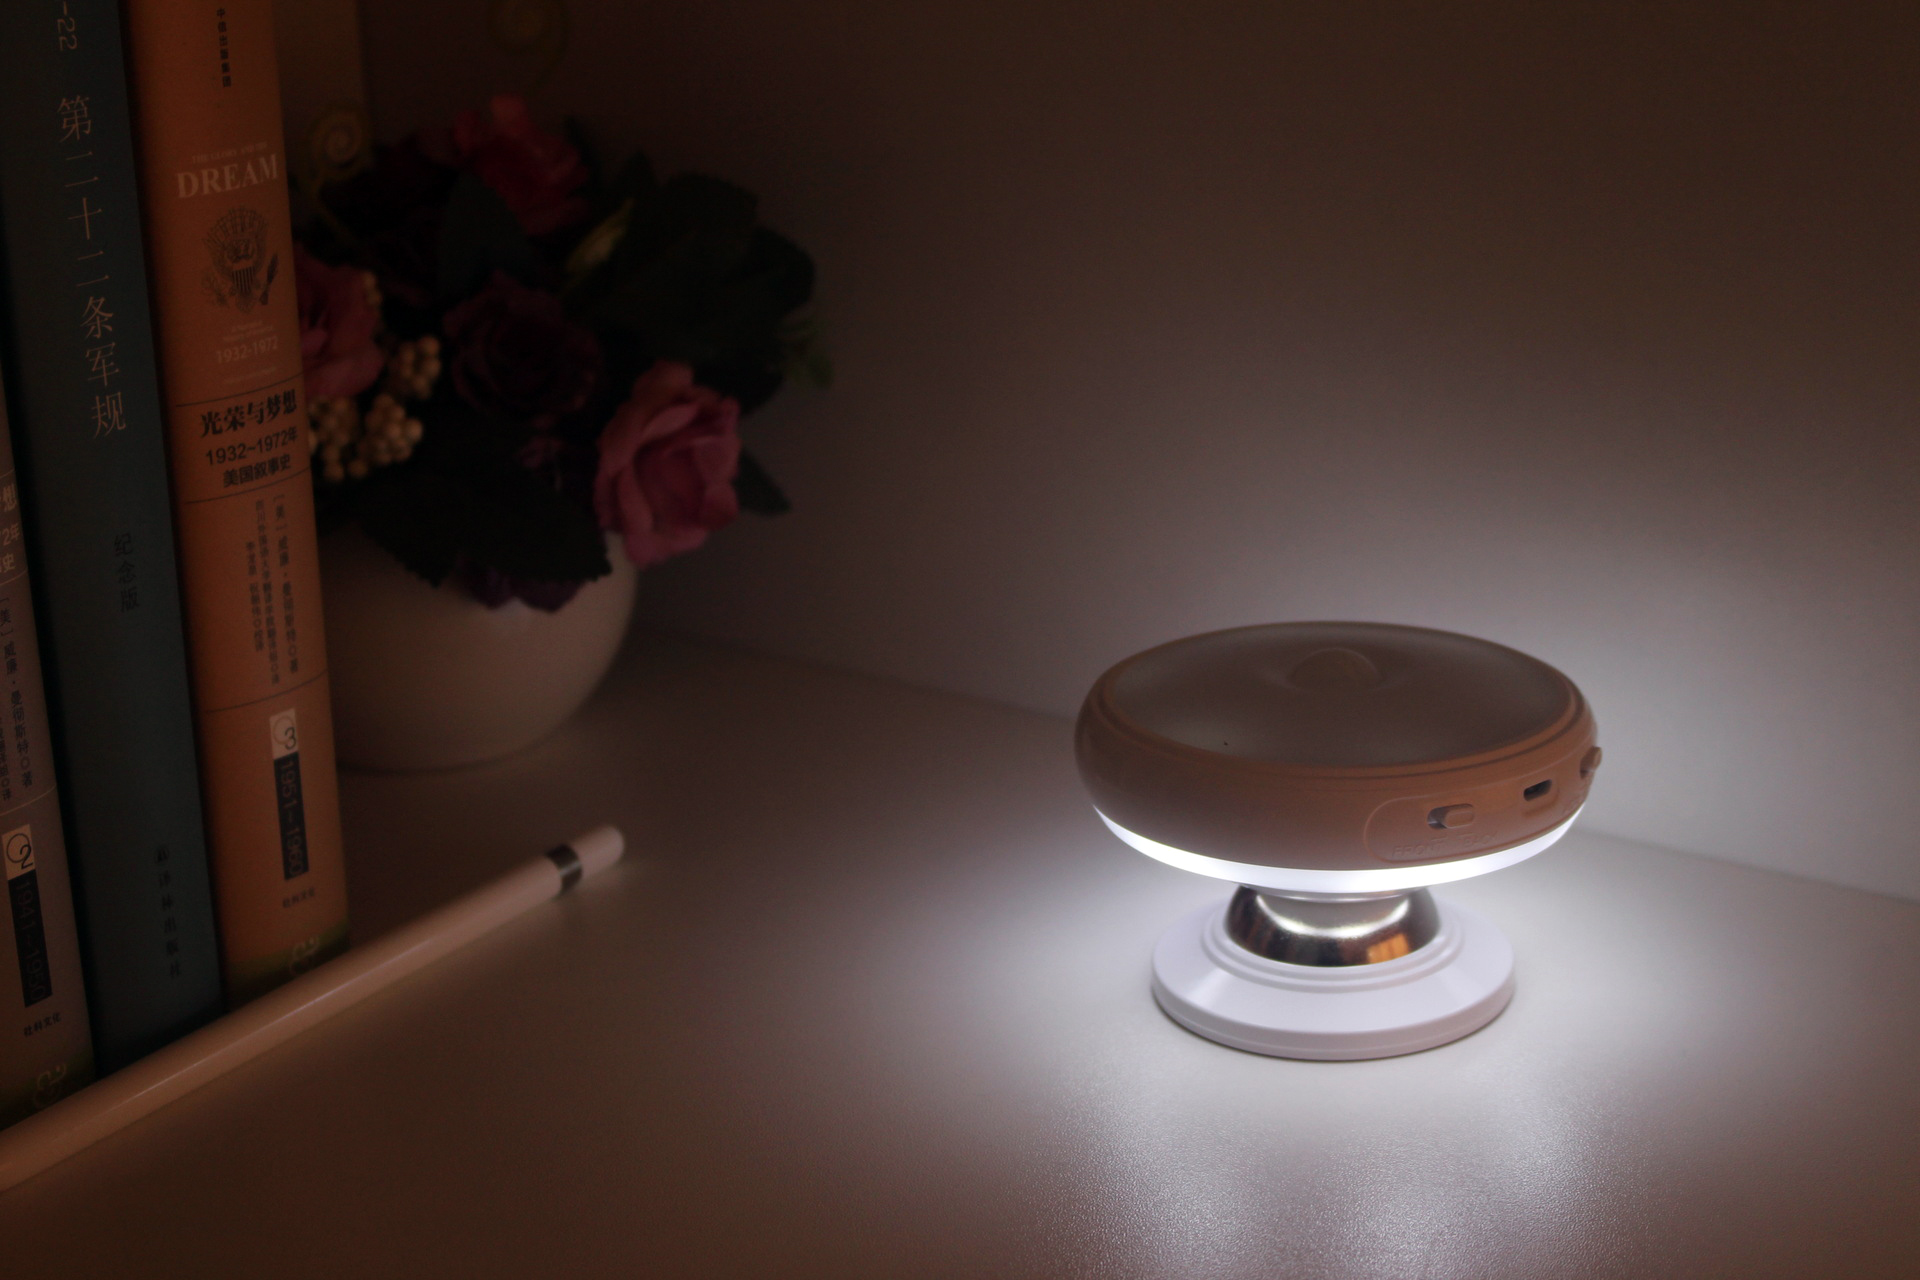 DX-004-360deg-Rotation-Human-Body-Sensor-LED-Night-Light-Magnetic-Holder-USB-Rechargeable-Lamp-1147919-11